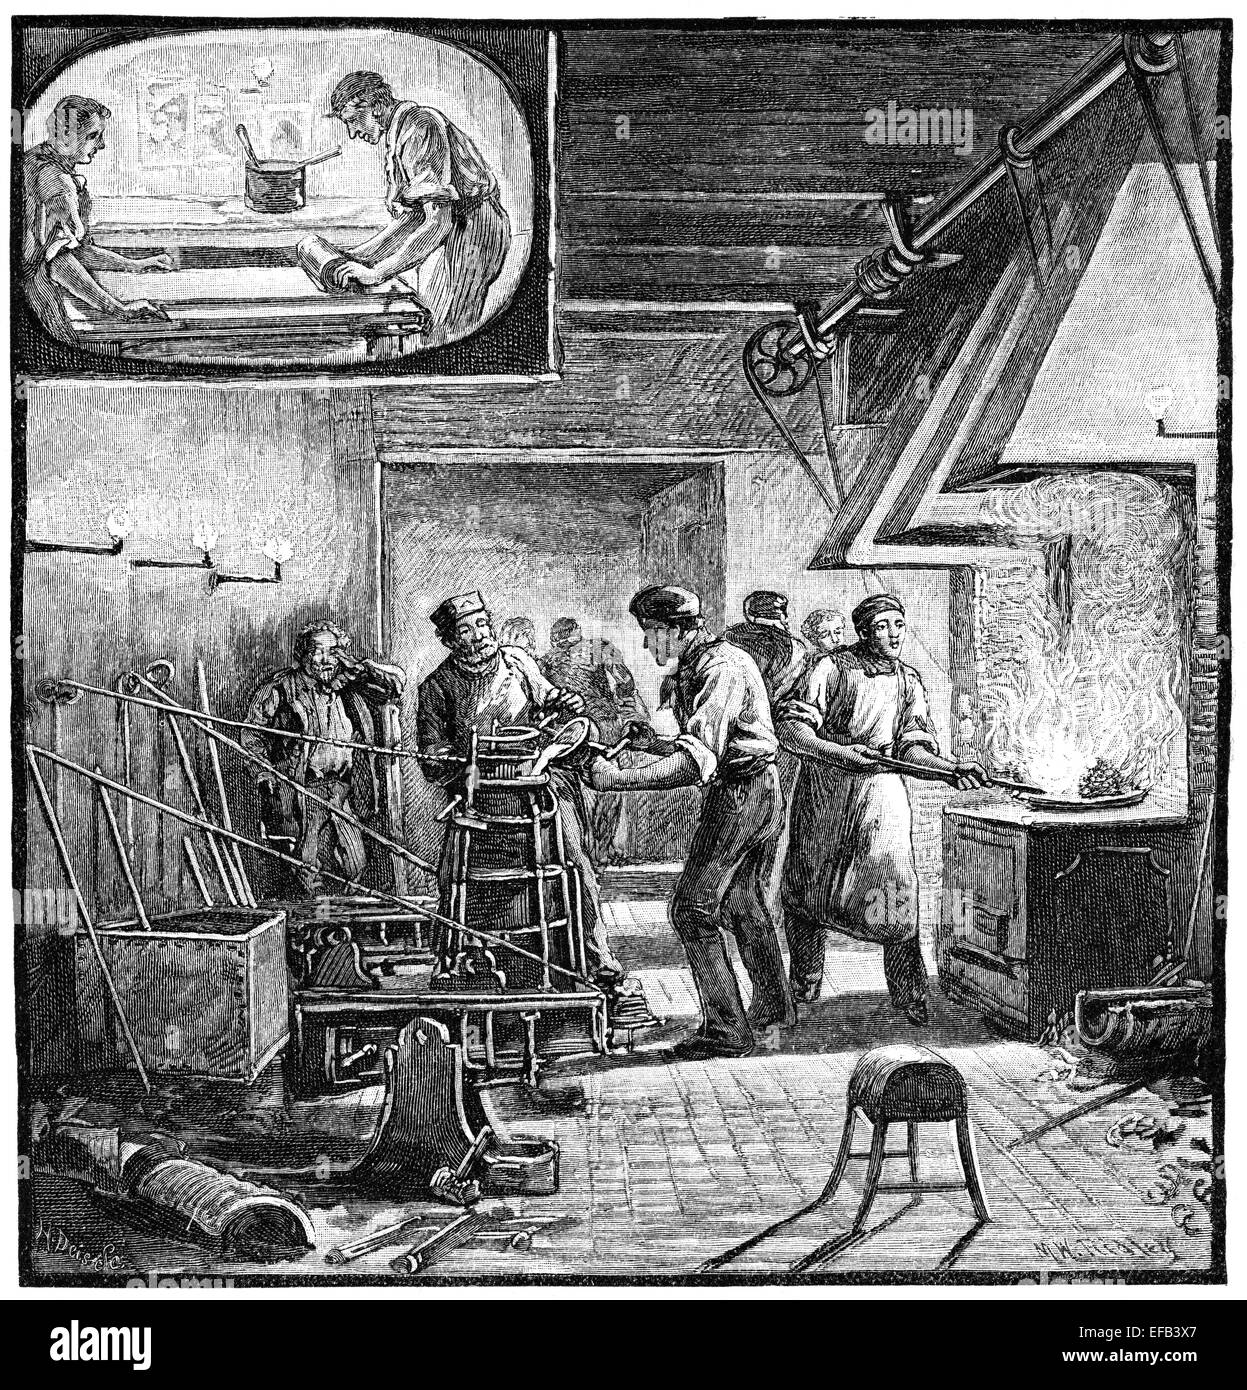 La fois type foundry. Illustration magazine vintage de 1881. Banque D'Images